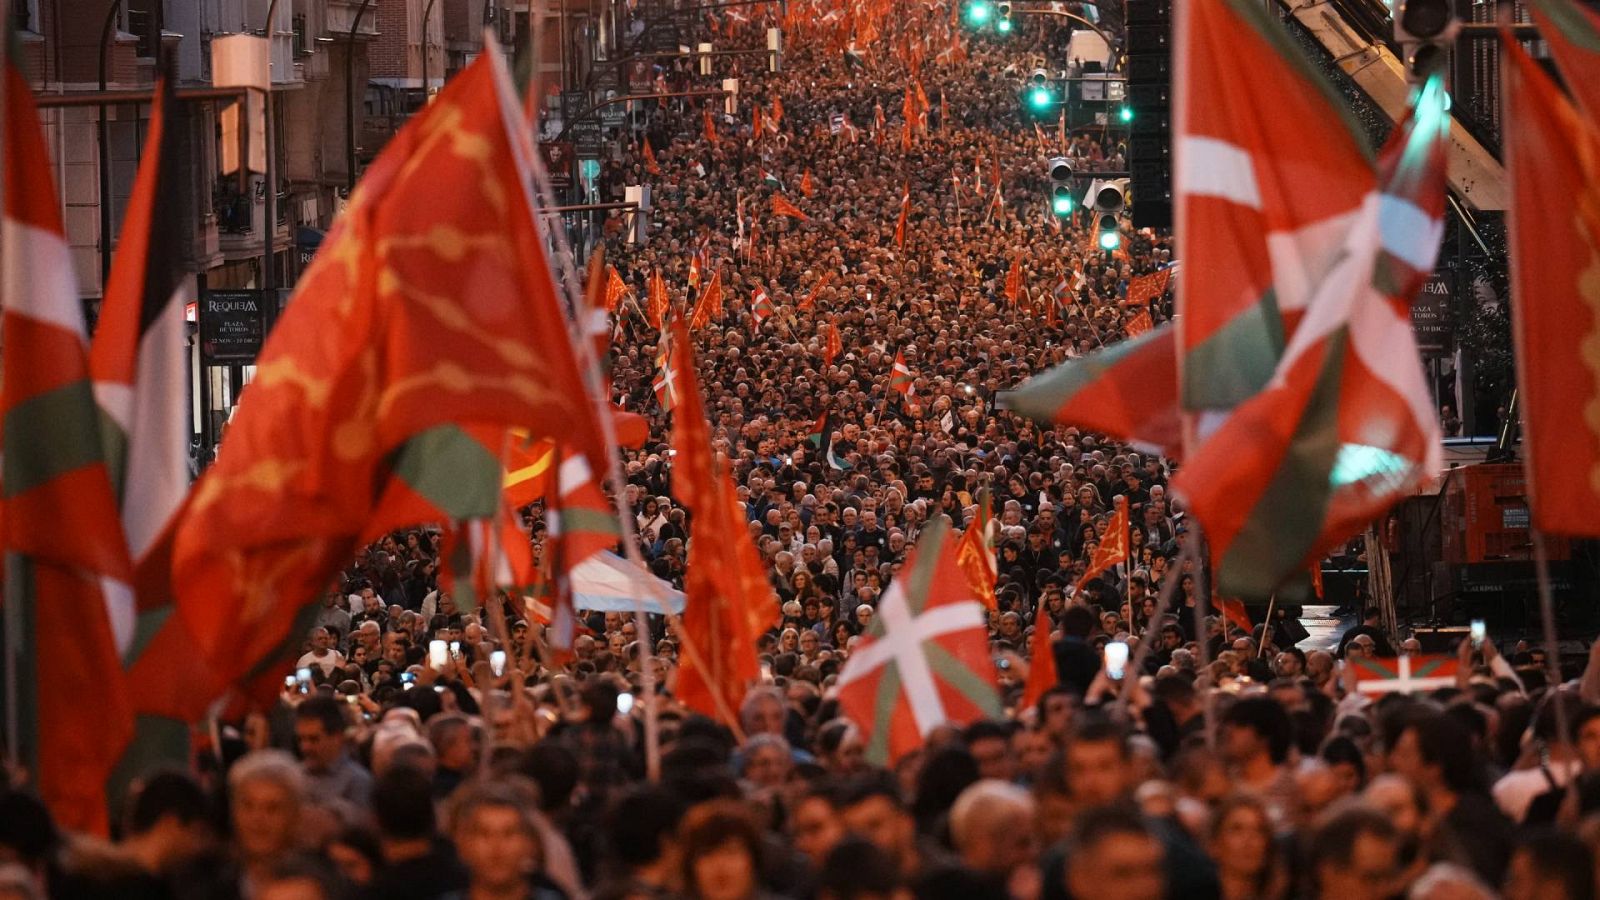 Miles de personas se manifiestan en Bilbao bajo el lema "Somos una nación" para abrir el debate territorial al País Vasco